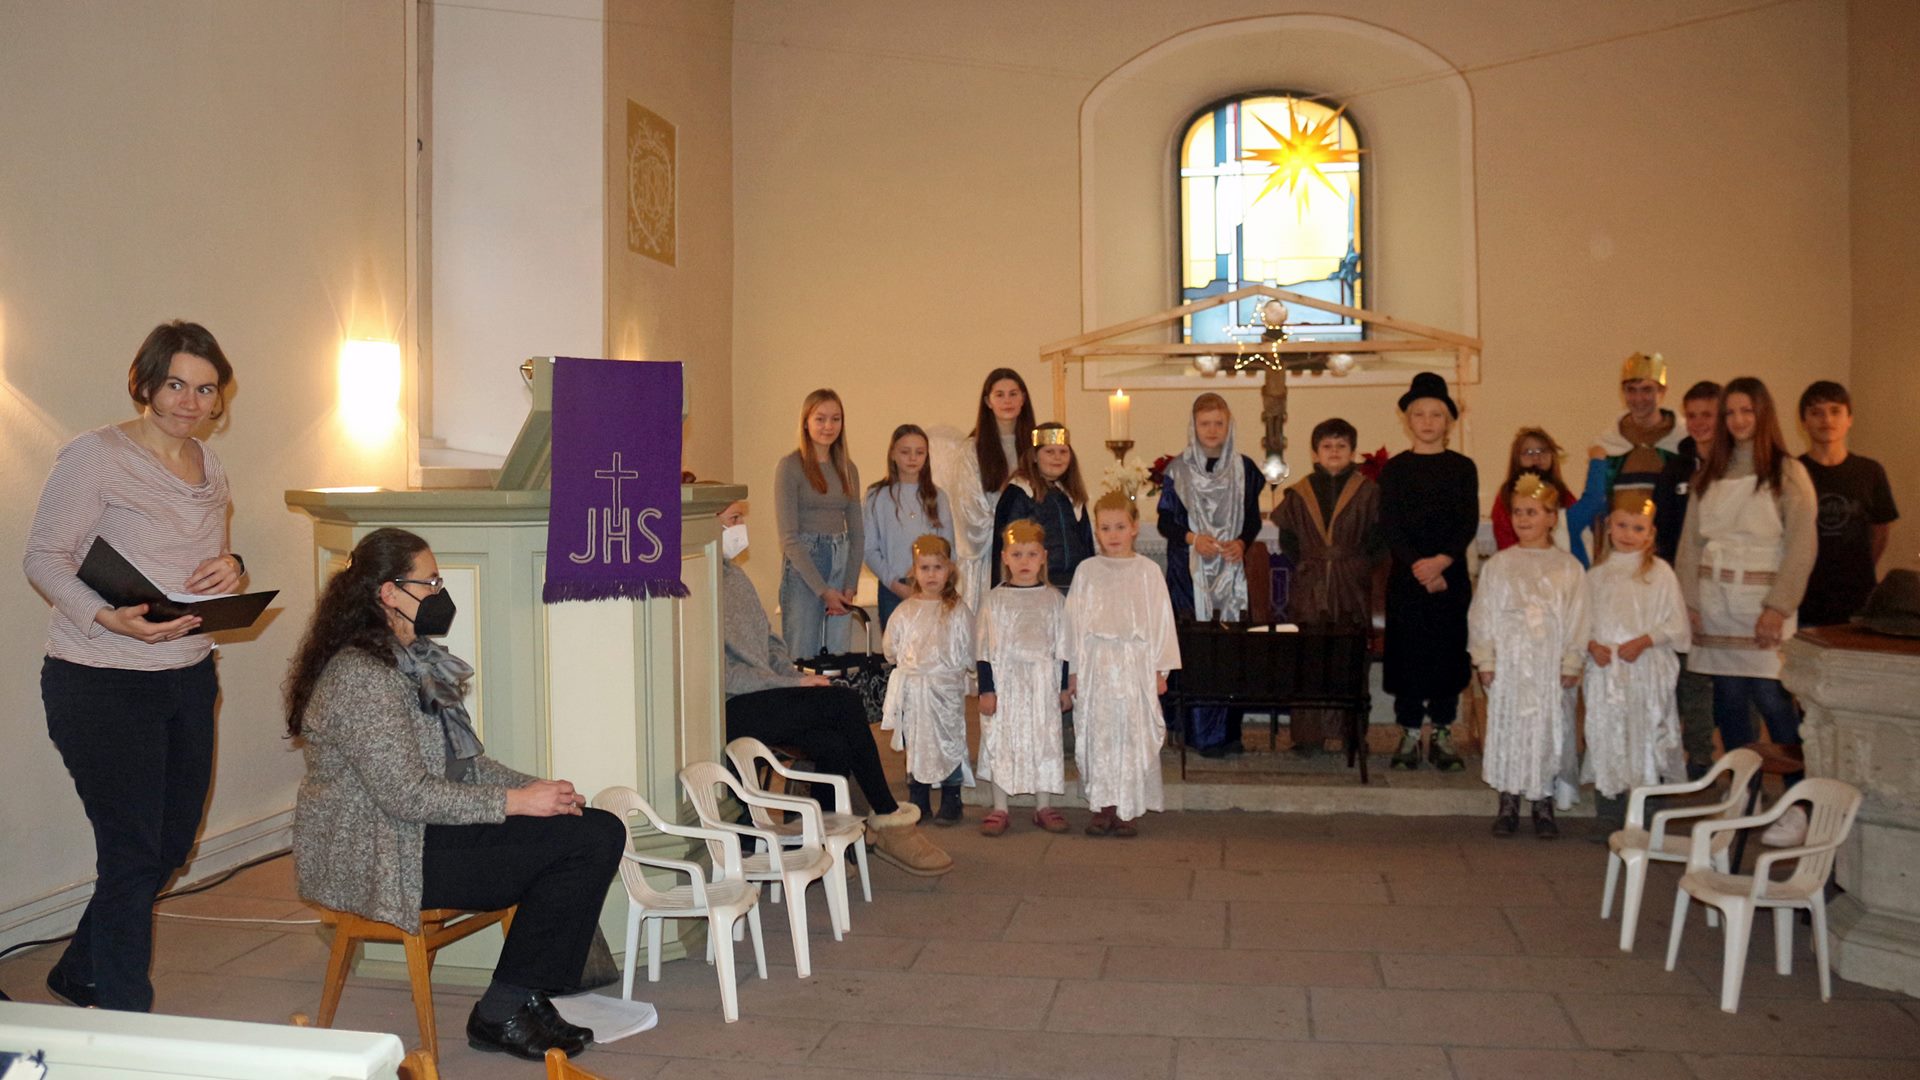 Gruppenbild von verkleideten Kindern in einer Kirche. Links im Bild befinden sich zwei Frauen. Rechts und links stehen kleine weiße Stühle.